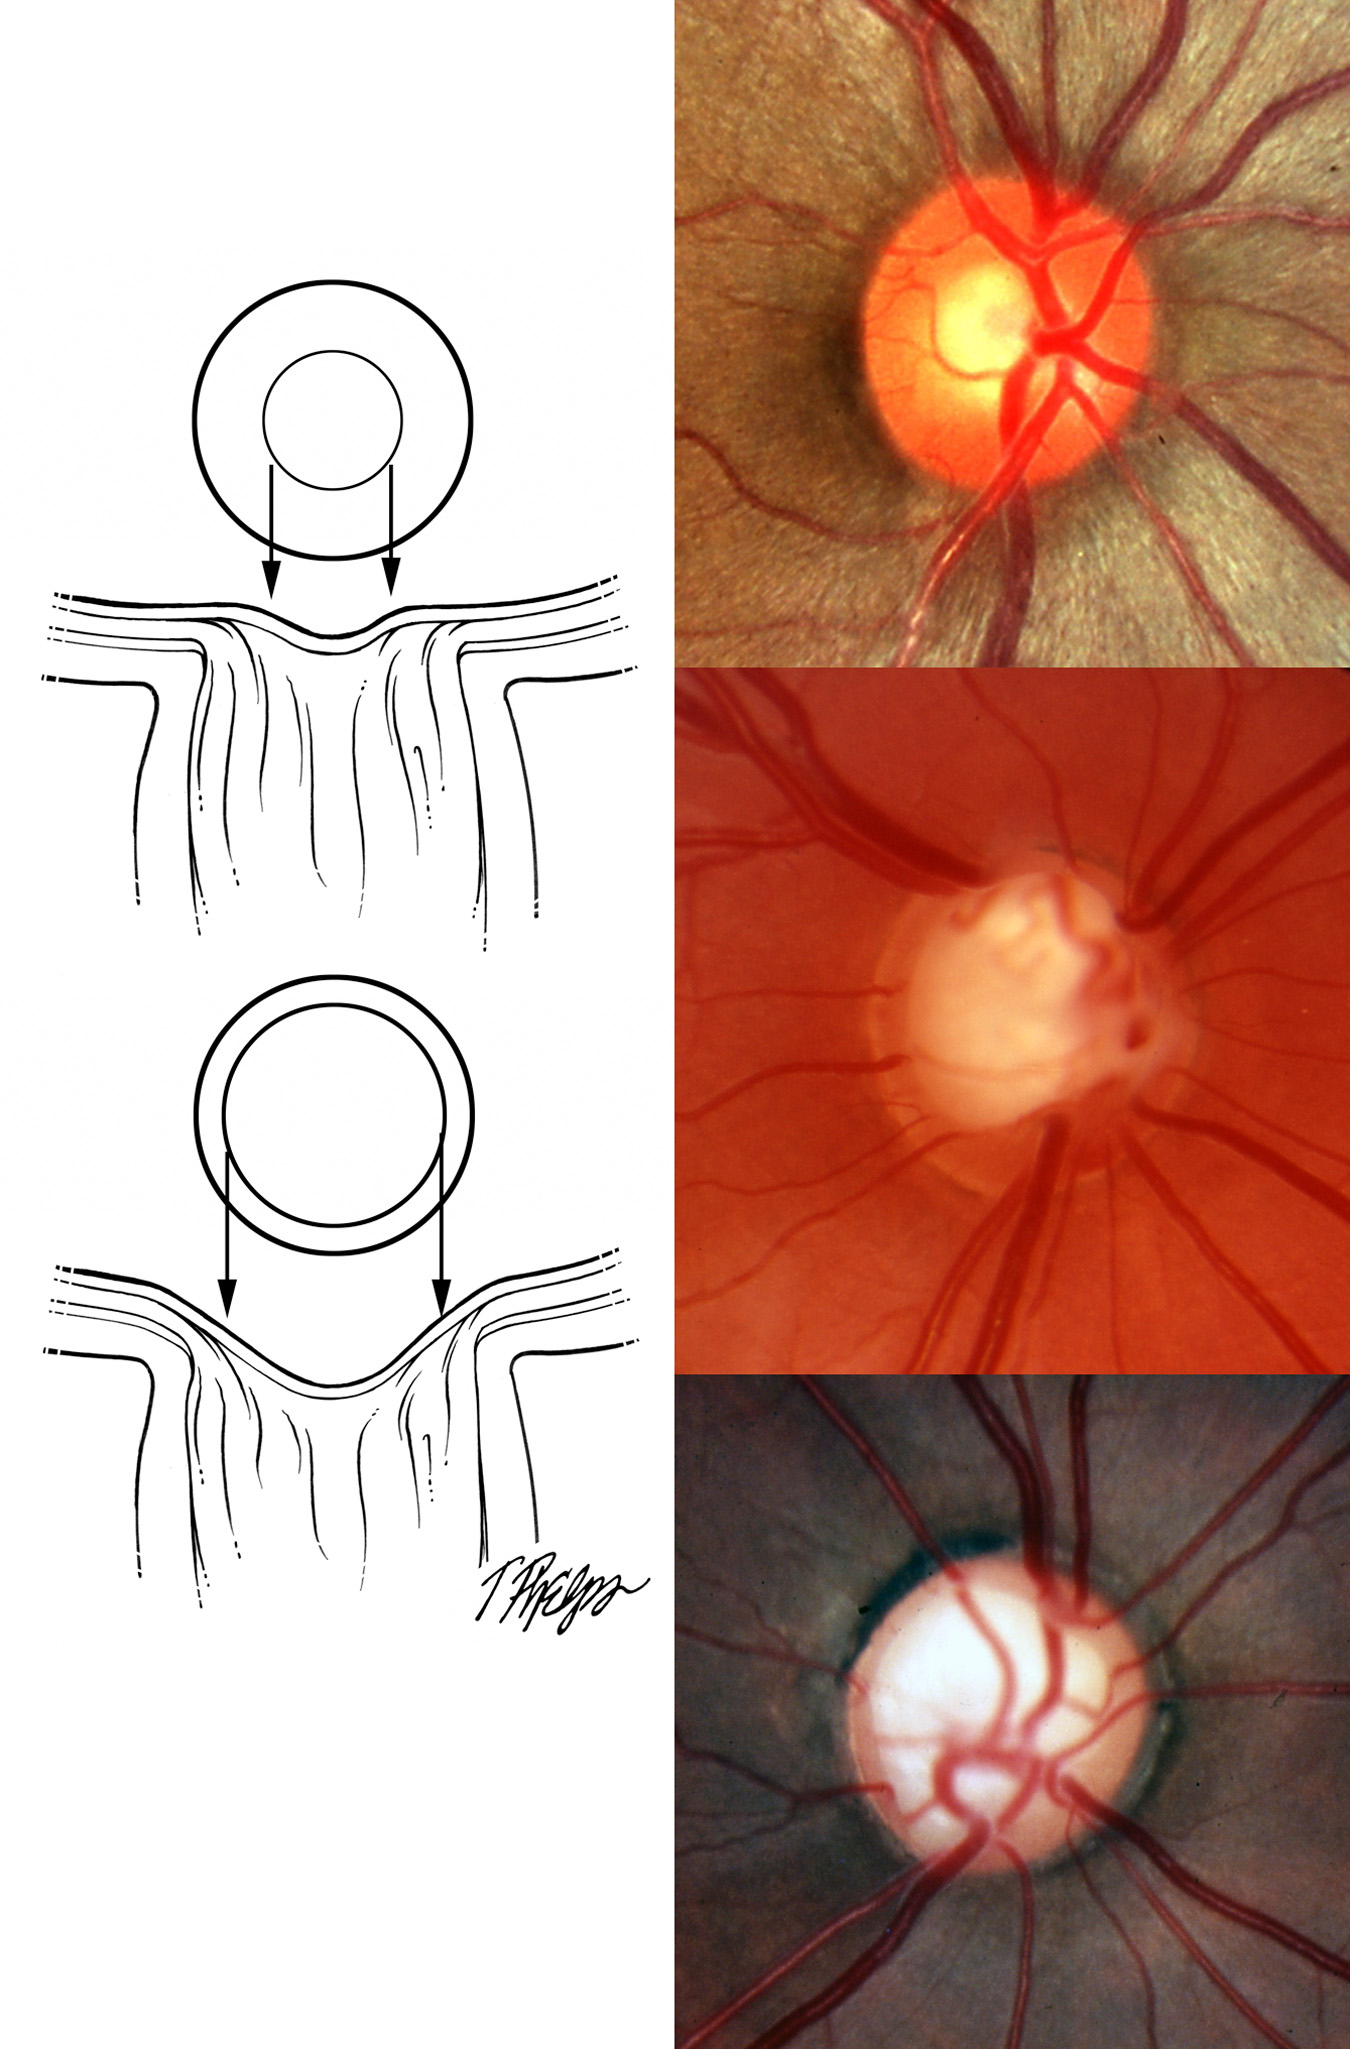 Optic nerve exam